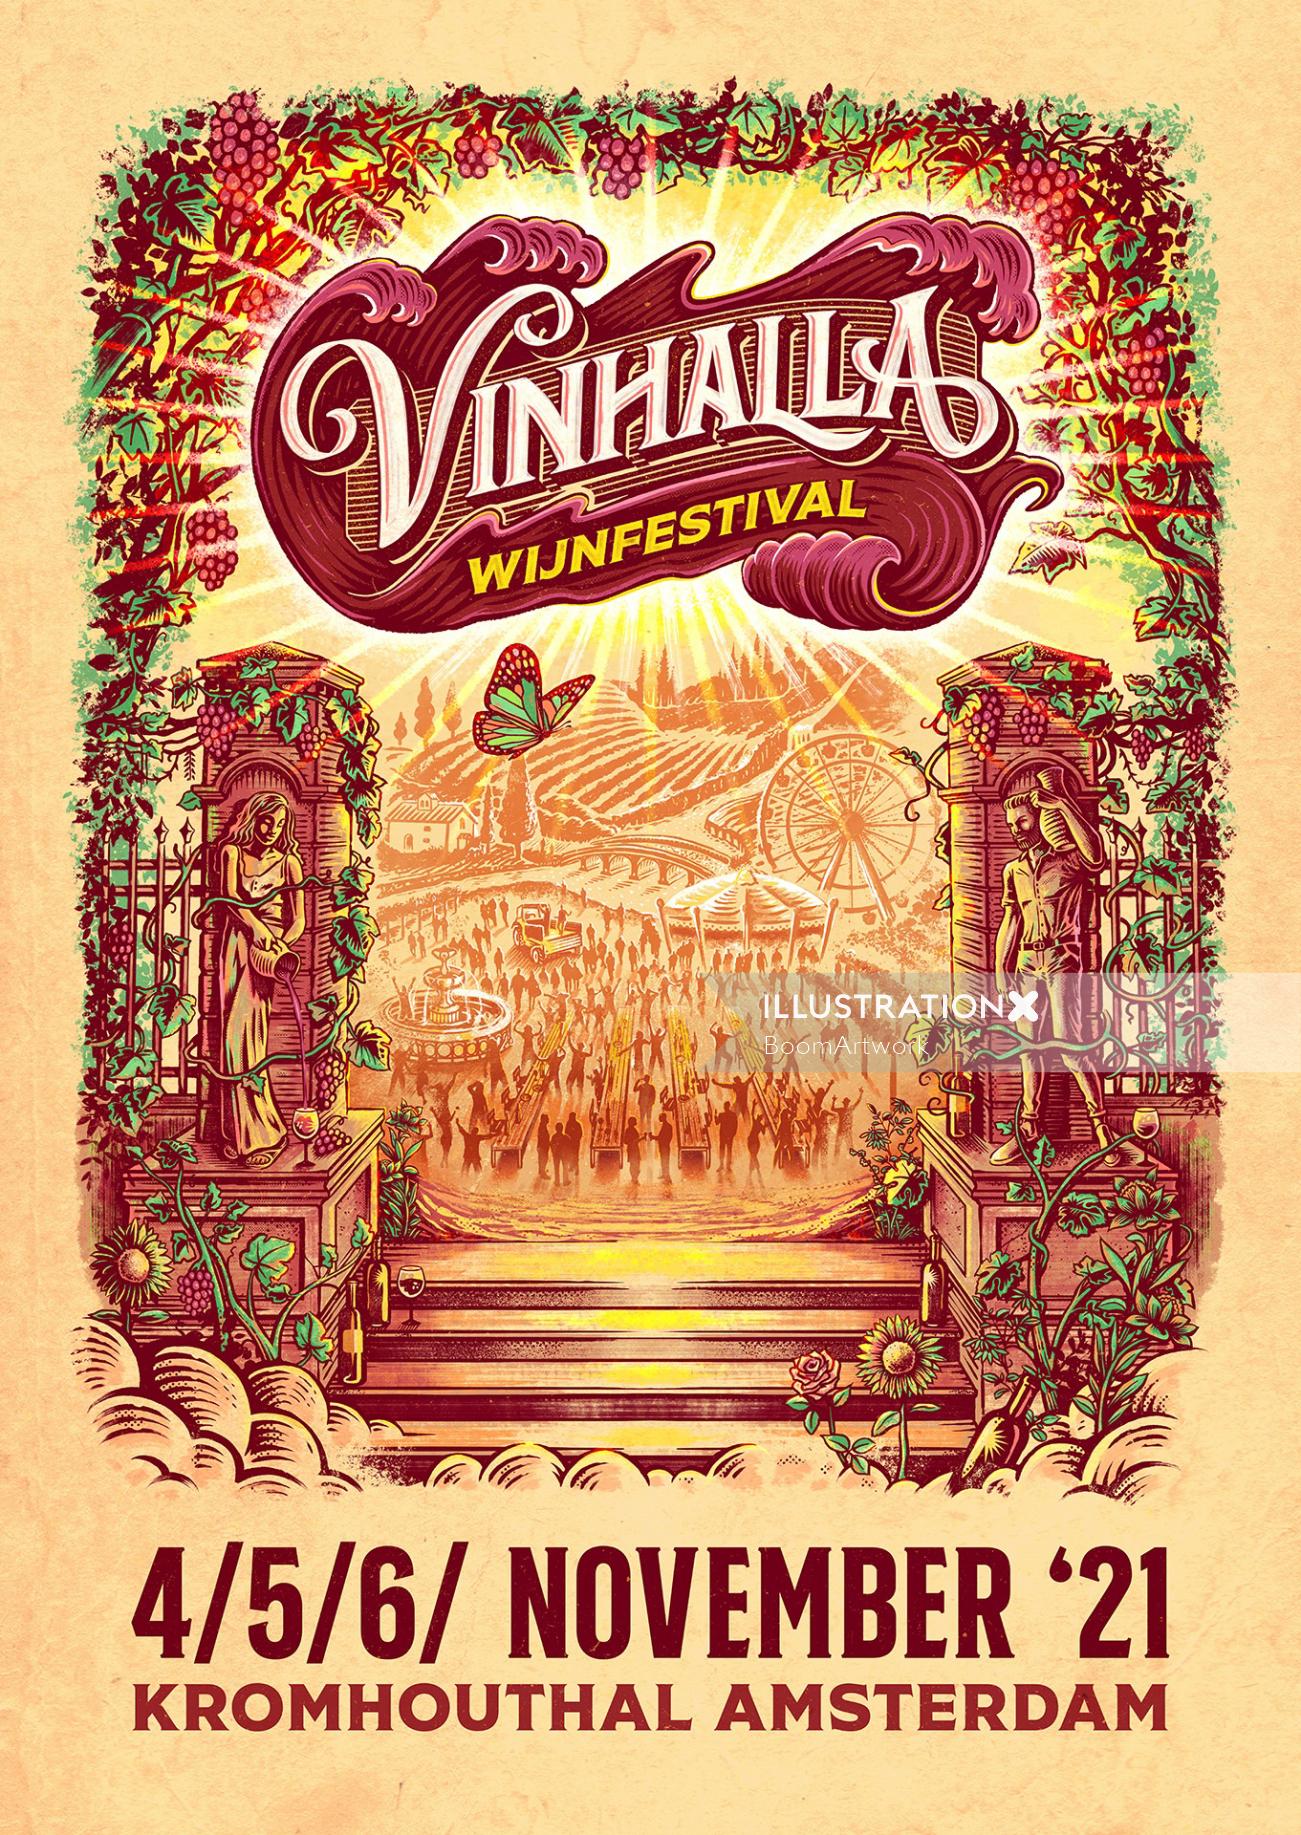 Poster illustration for wine festival Vinhalla